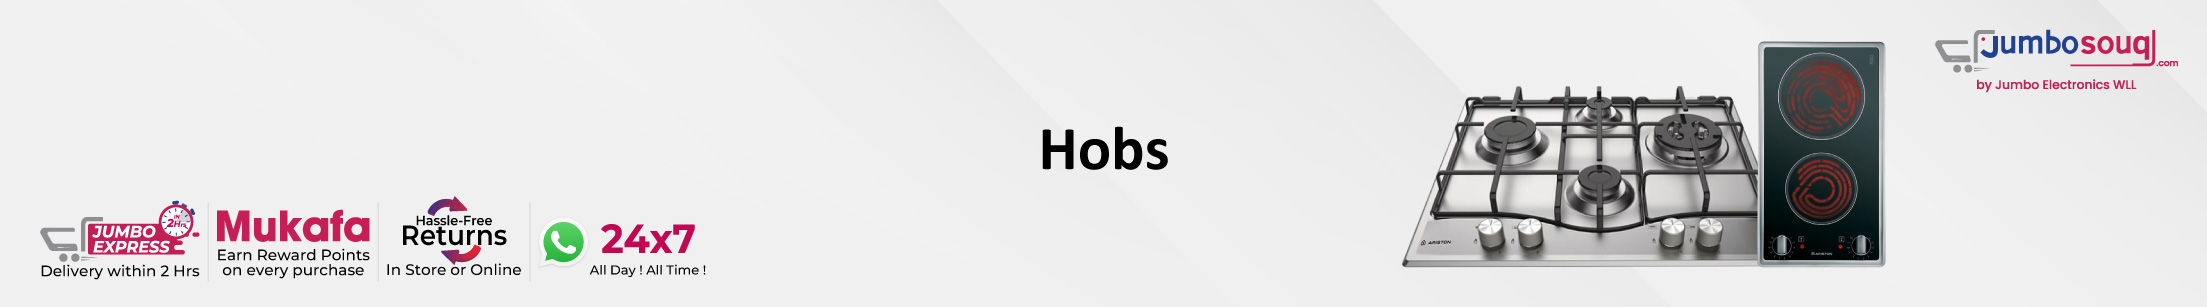 Hobs